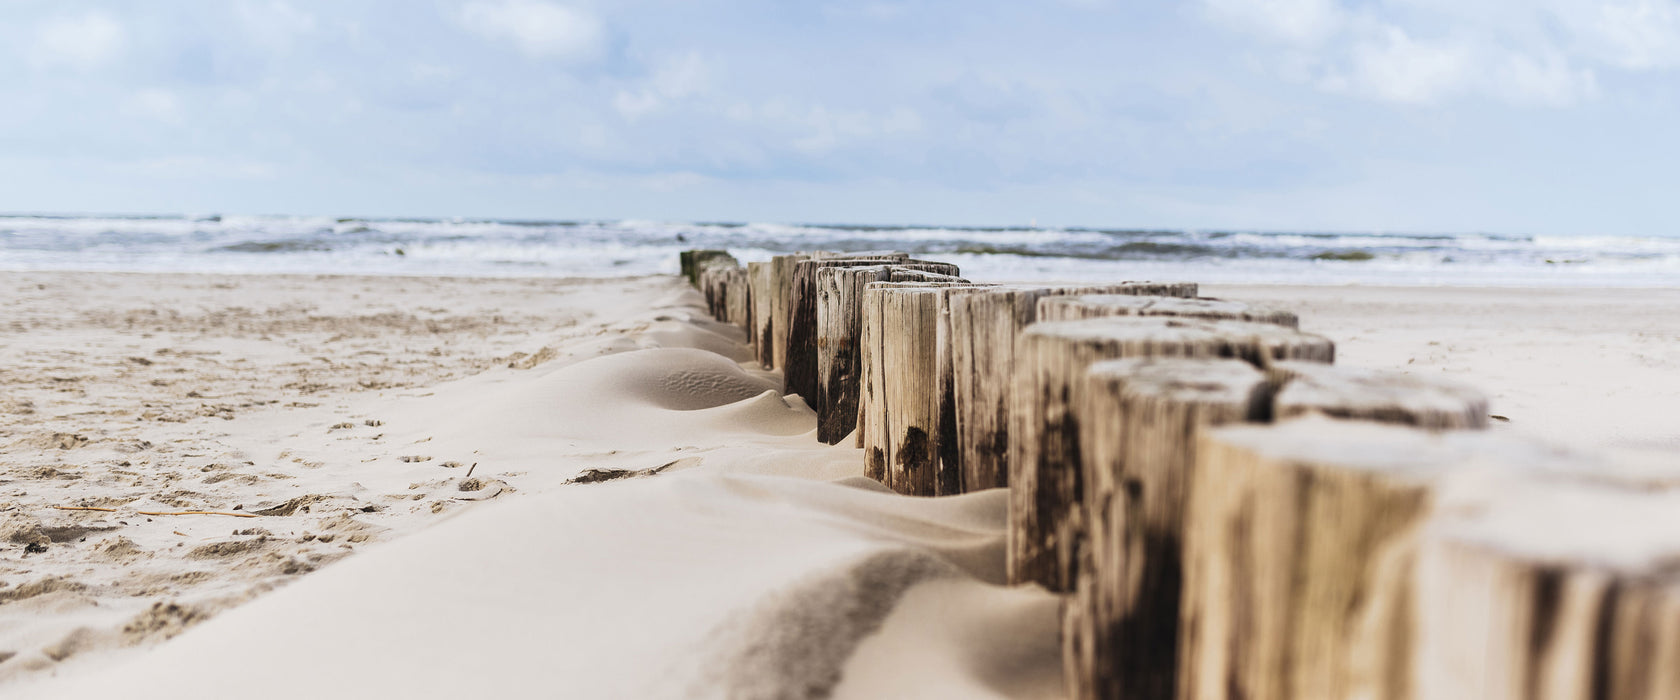 Nahaufnahme Steg aus Holzpföcken am Meer, Glasbild Panorama